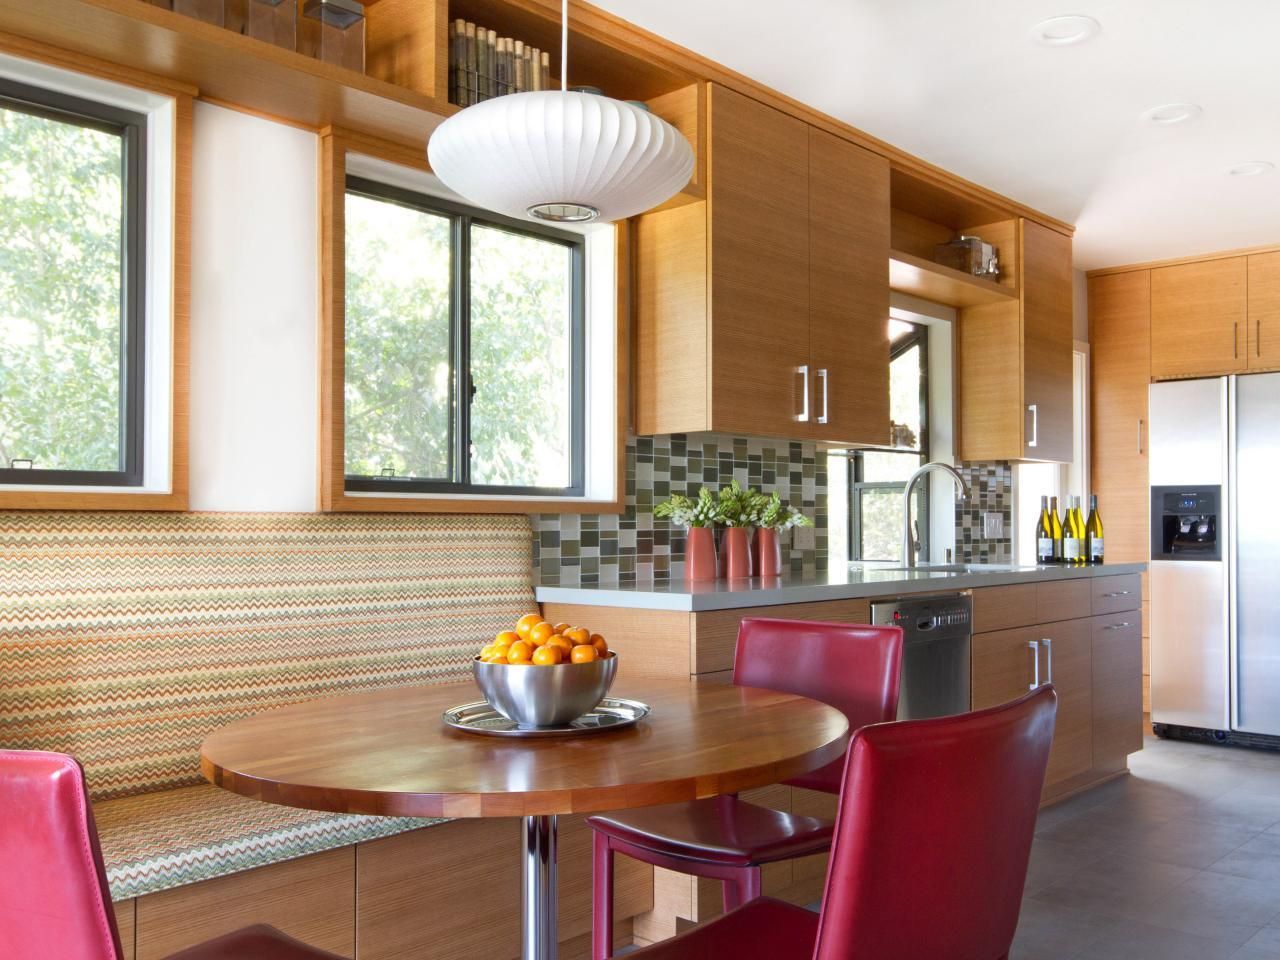 Okrugli stol u kuhinji: klasičan naglasak u modernom interijeru